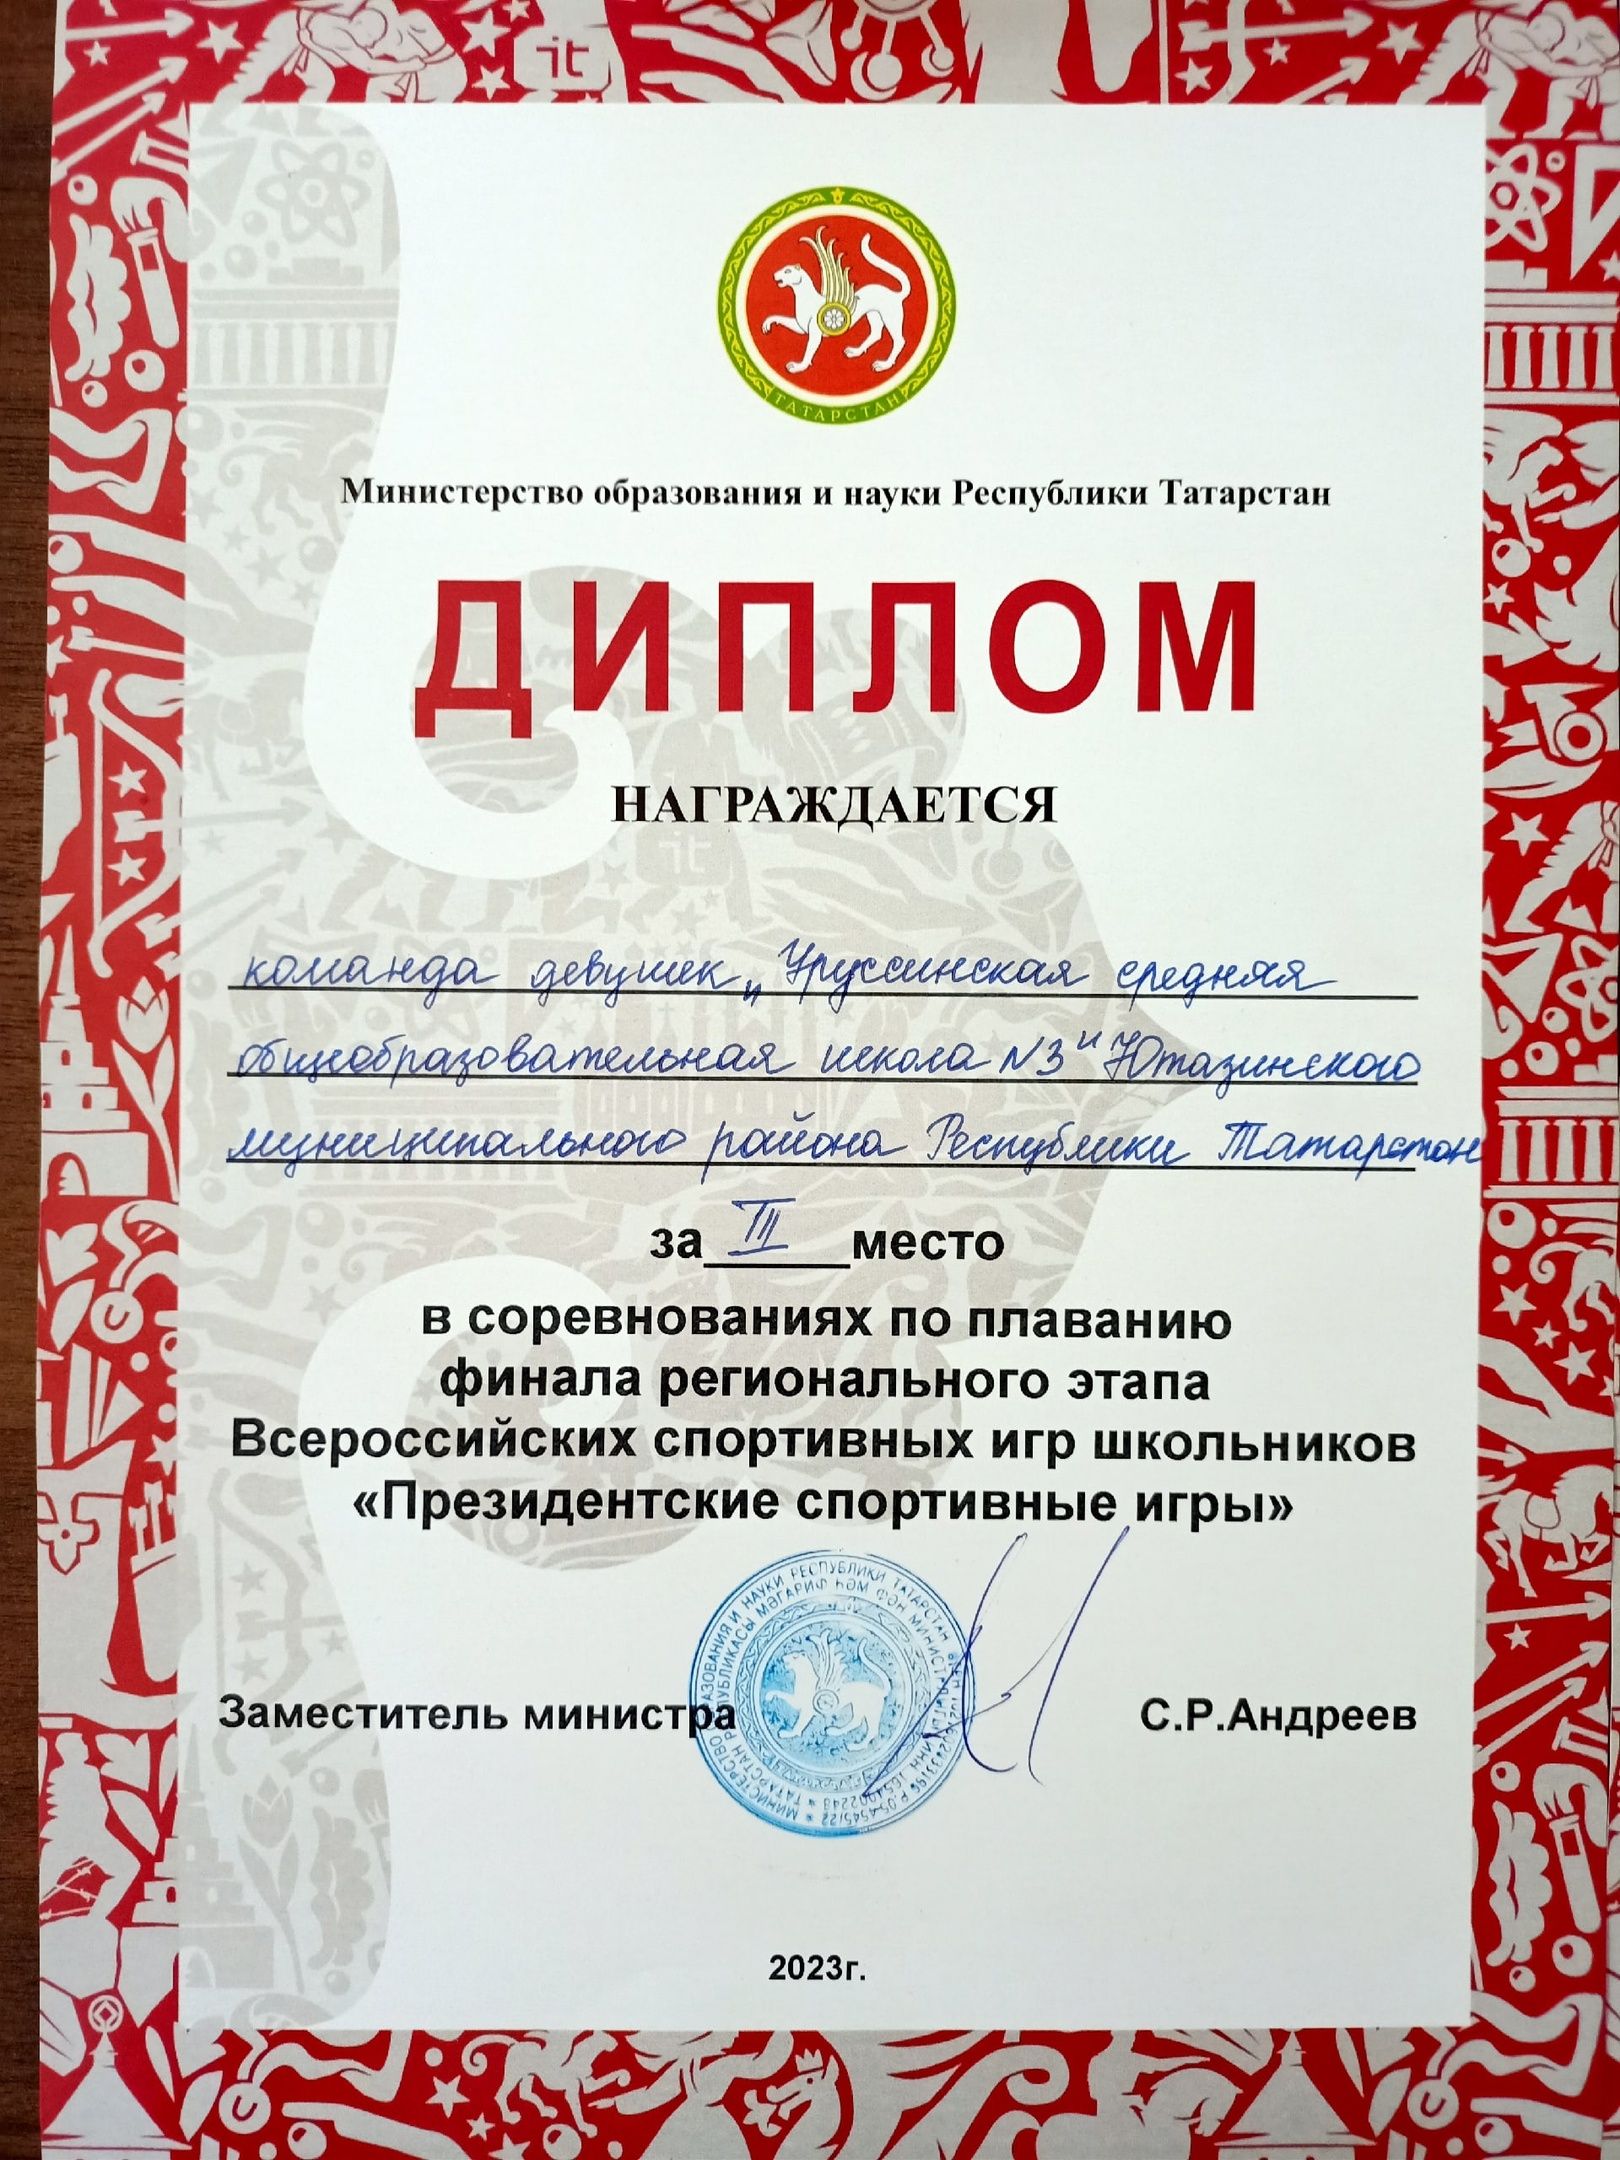 Уруссинские школьники поучаствовали в региональном этапе Всероссийских спортивных игр школьников